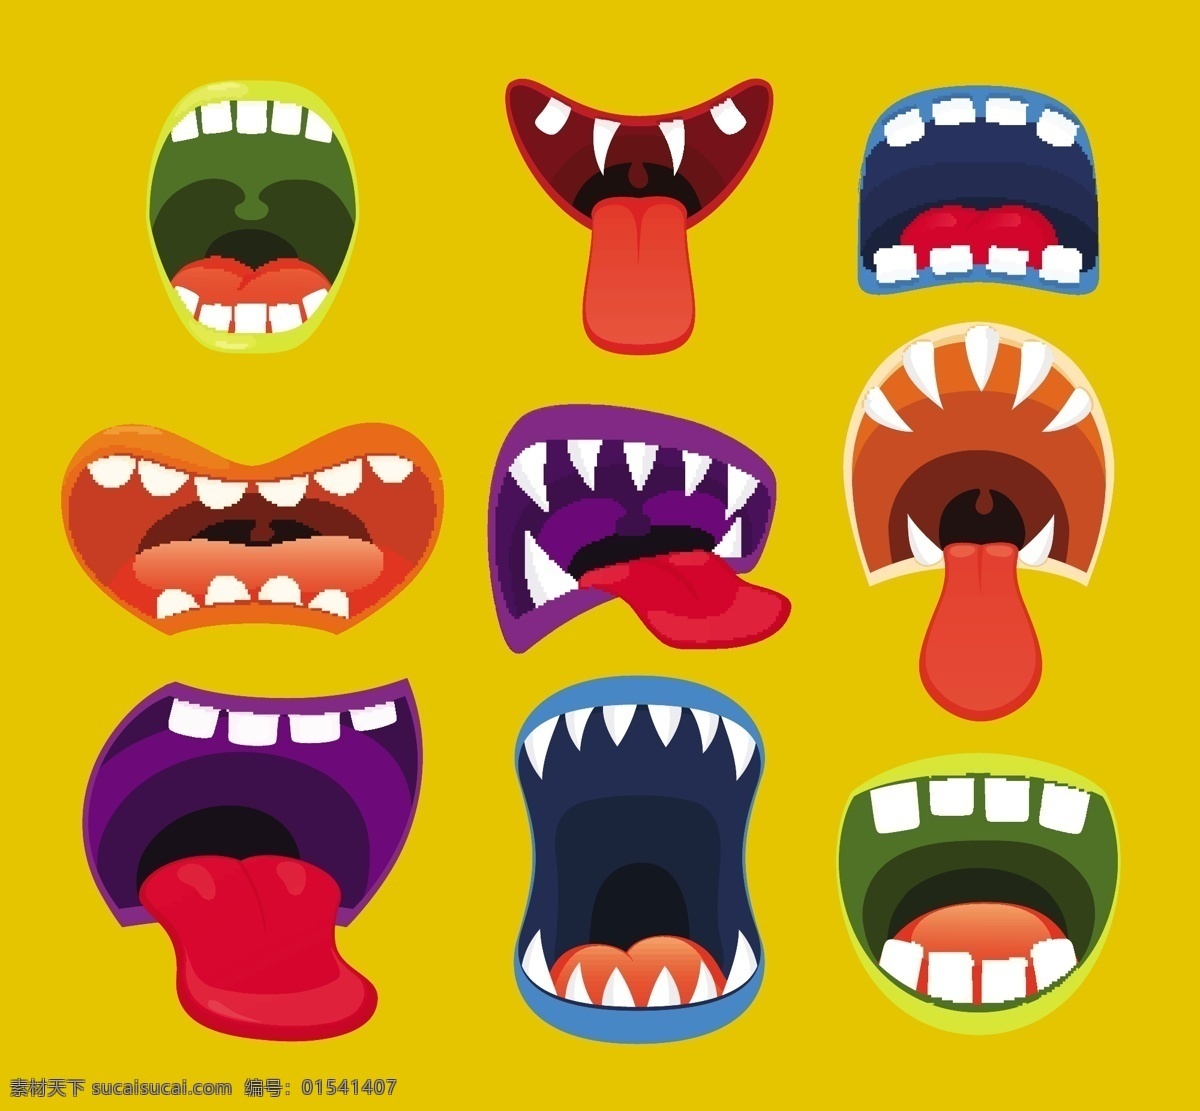 怪兽嘴巴 怪兽 怪物 插图 舌头 牙齿 嘴巴 大嘴 有趣 幽默 艺术 卡通 可爱 标志 元素 风格